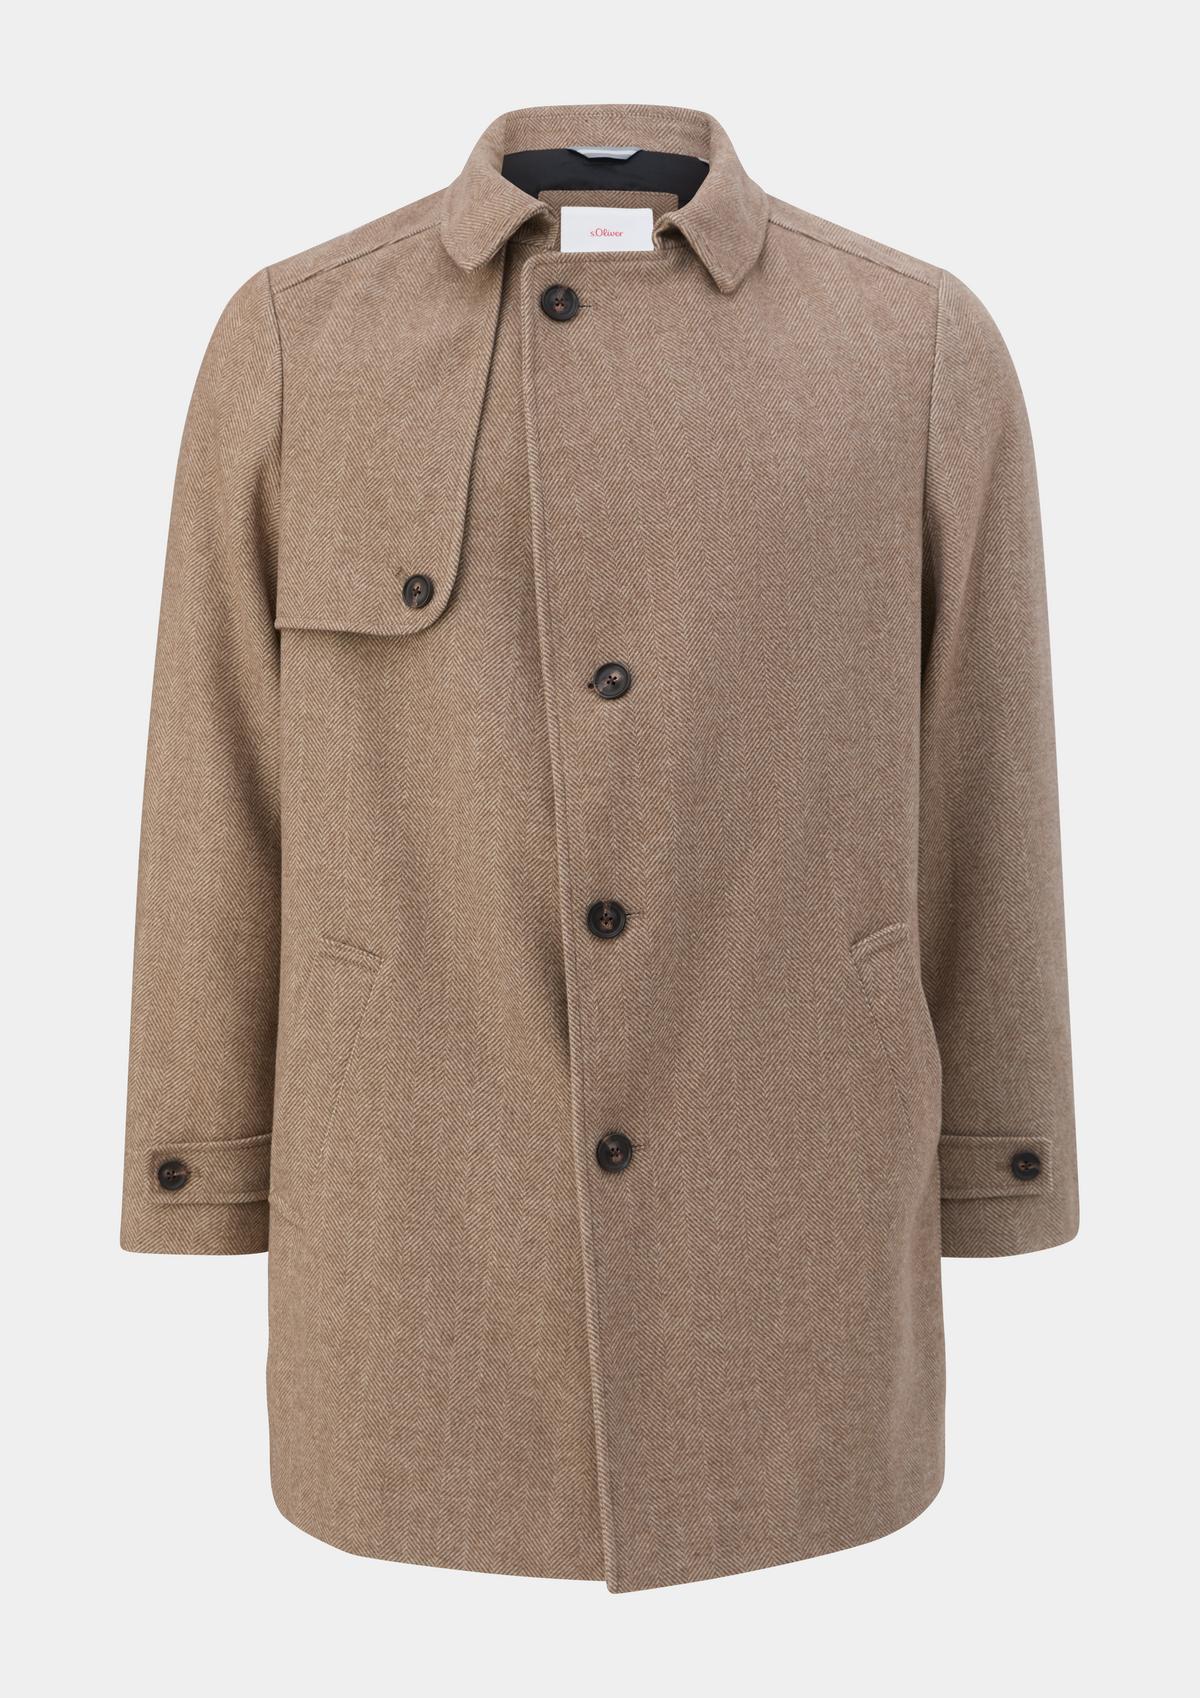 s.Oliver Outdoor coat